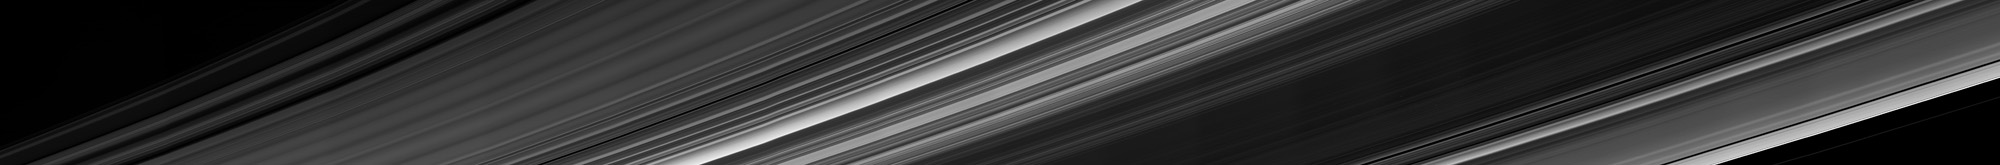 Cassini: il mosaico degli anelli ripreso il 9 settembre 2017